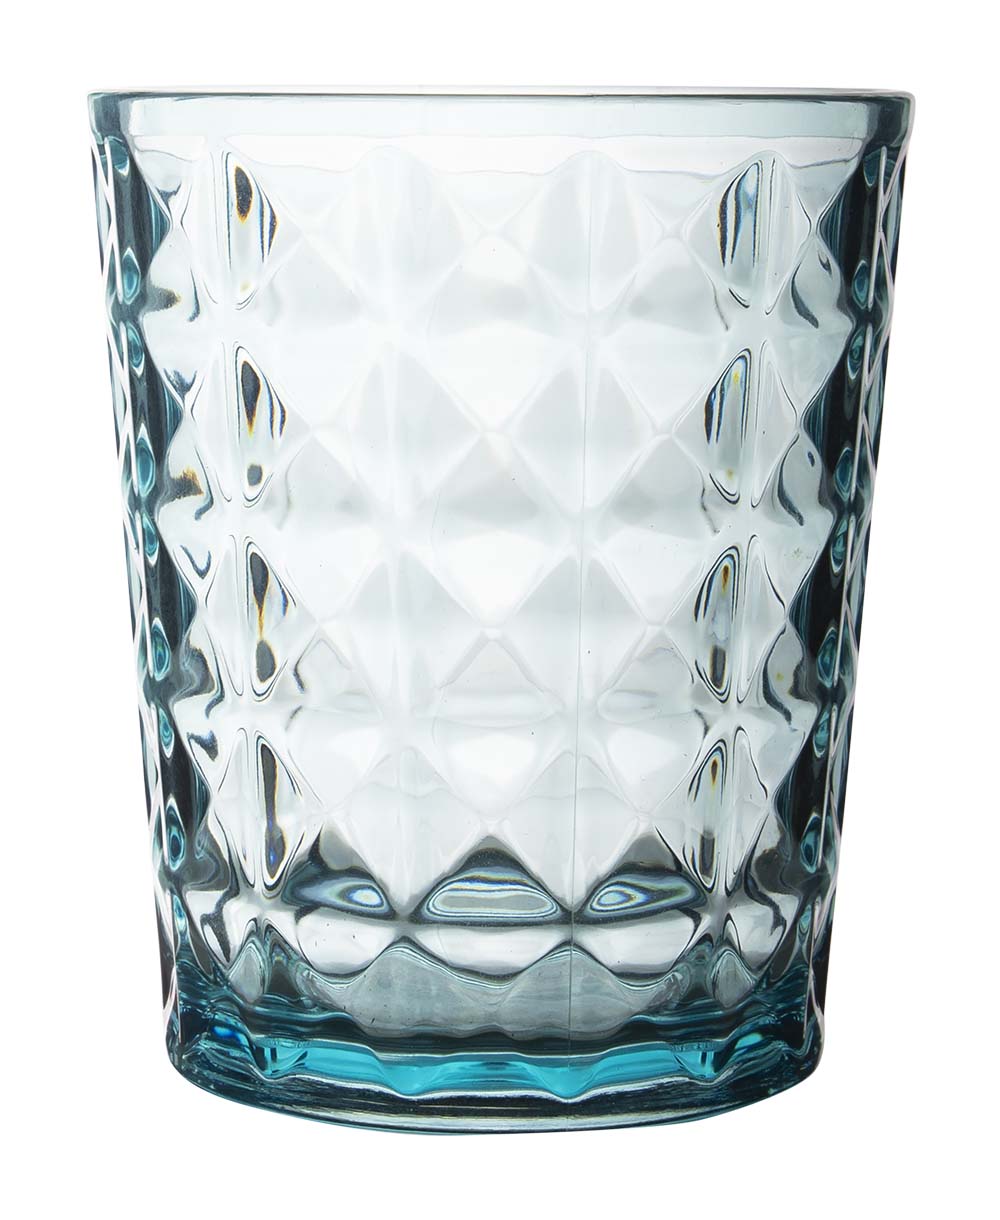 6967963 Een stijlvol turquoise kleurig waterglas uit de Stone line collectie. Vrijwel onbreekbaar door hoogwaardig SAN materiaal. Zeer gemakkelijk te reinigen en langdurig te gebruiken, wat het glas erg duurzaam maakt. Daarnaast is het waterglas erg lichtgewicht en krasbestendig. Inhoud: 480 ml.